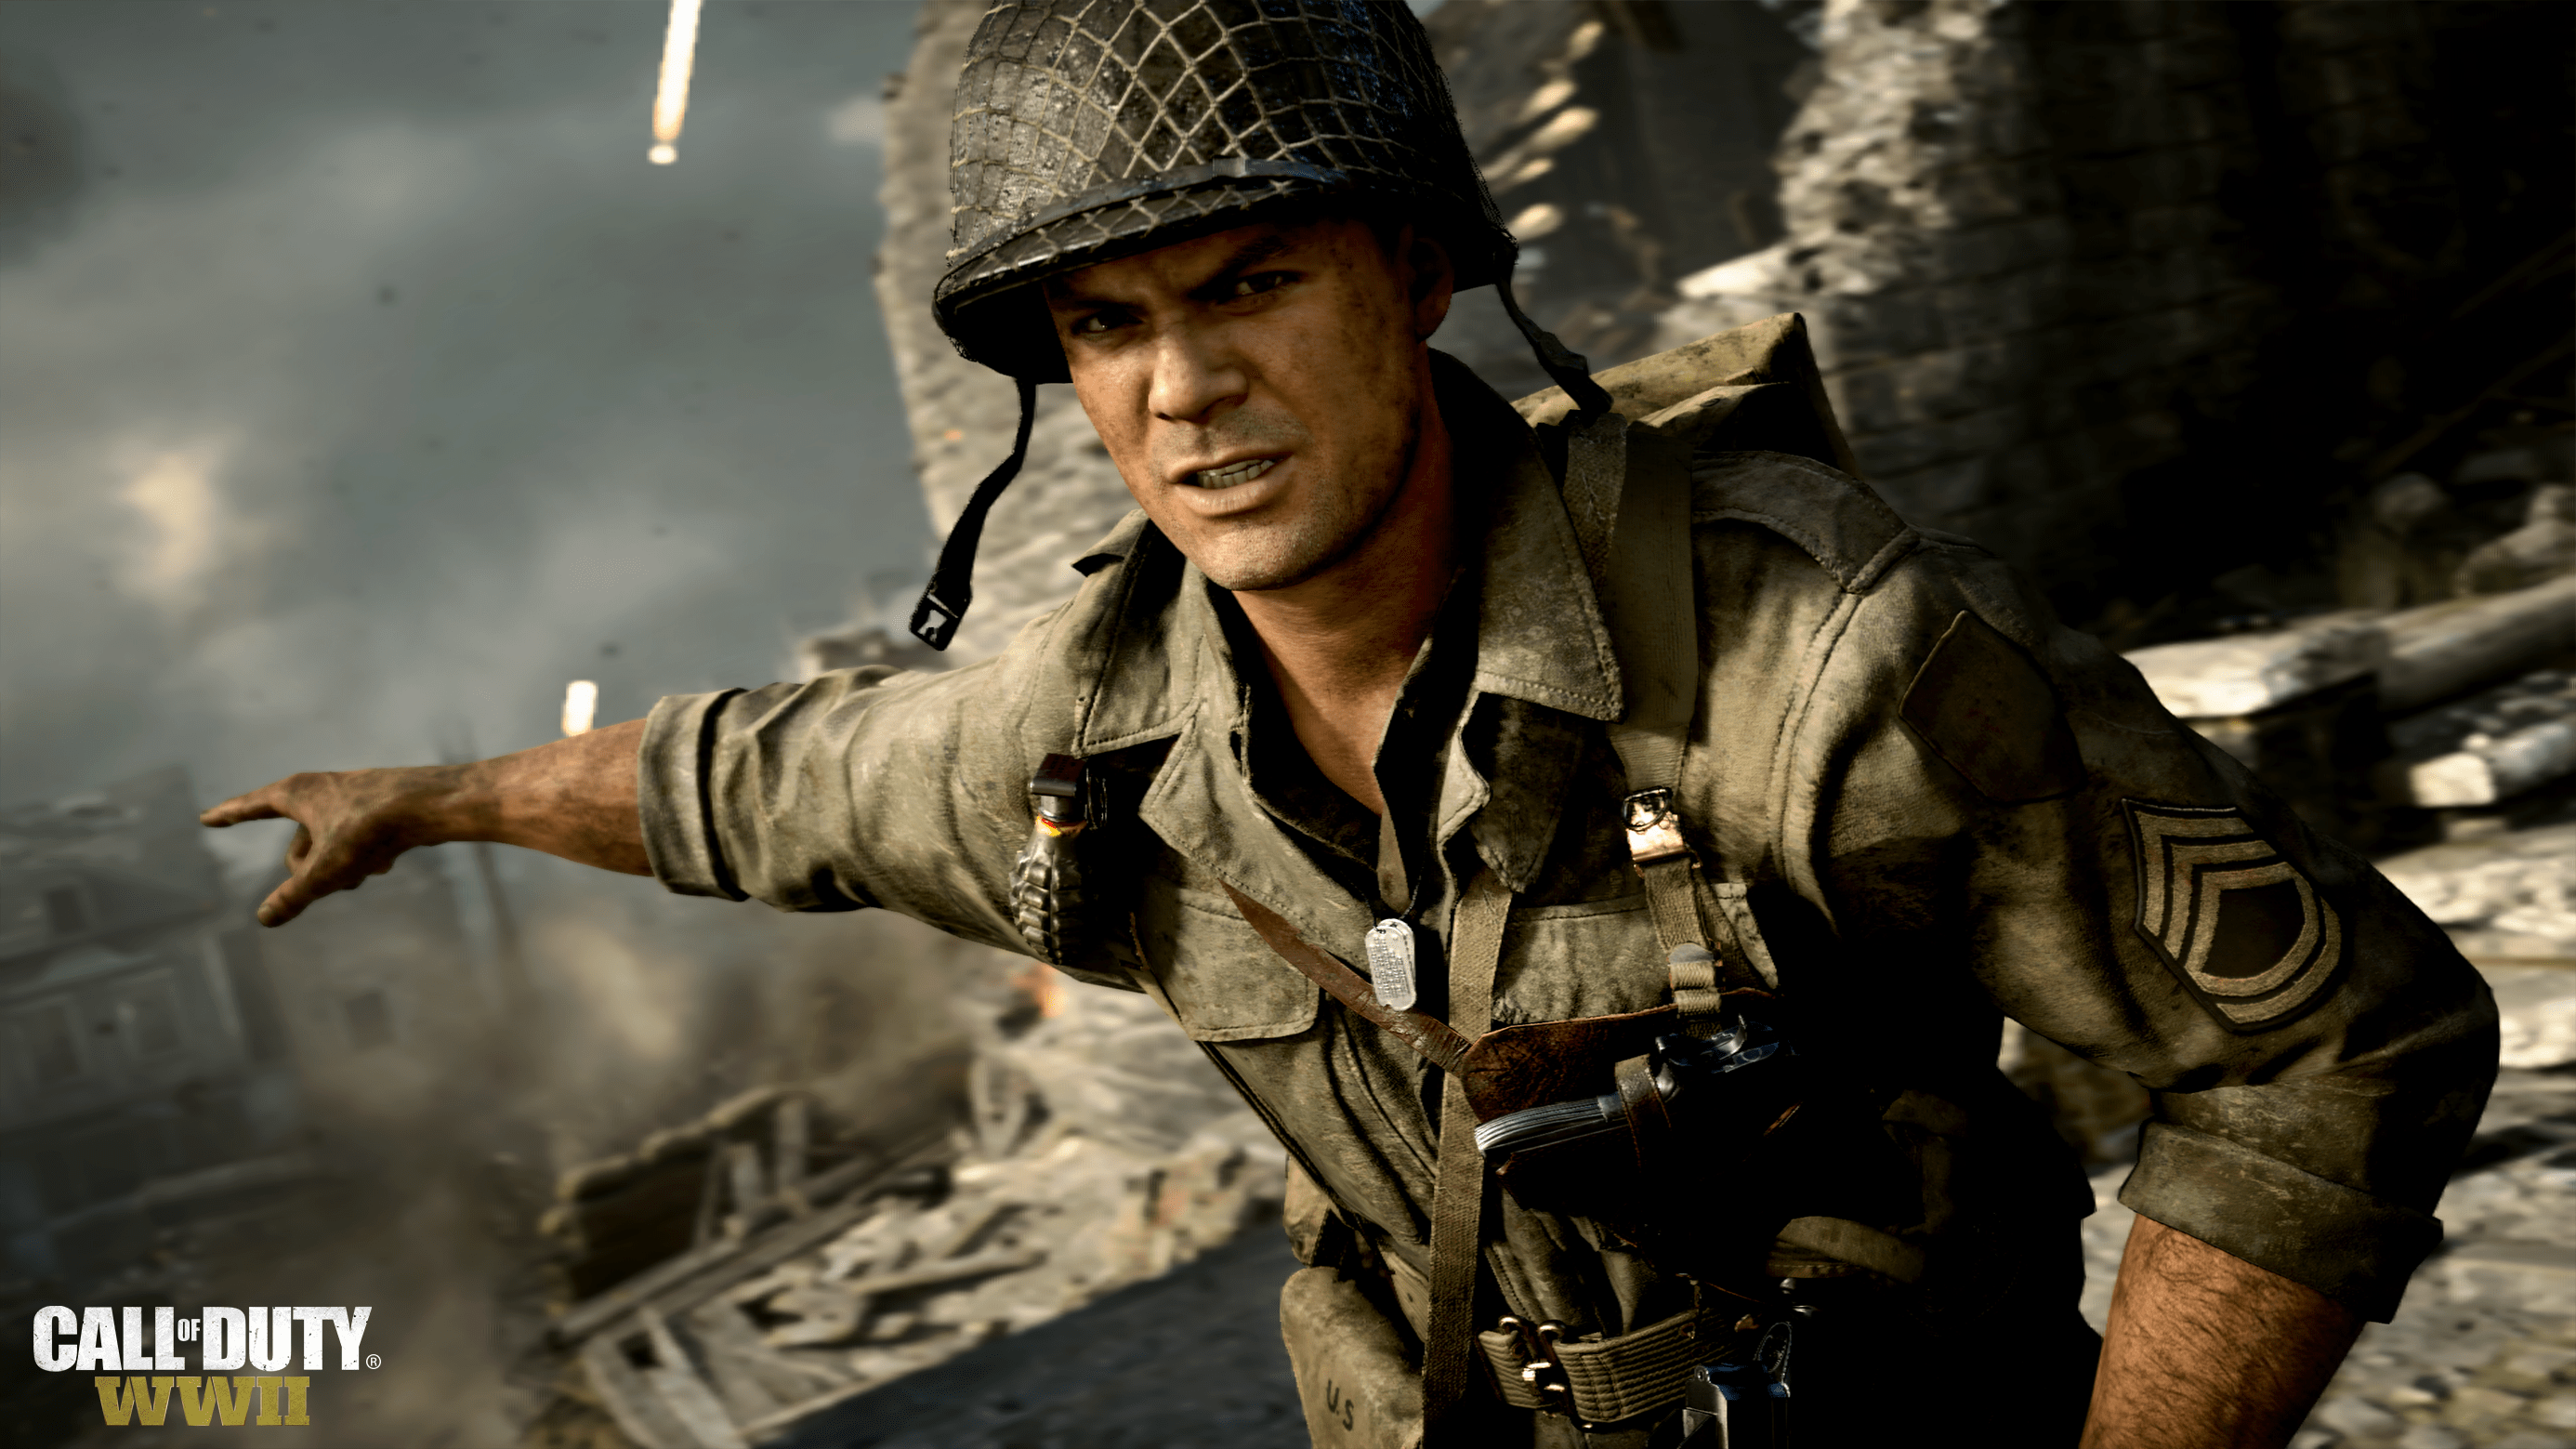 بازی Call of Duty: WWII در ماه ژوئن با داشتن PlayStation Plus بر روی PS4 رایگان خواهد بود.